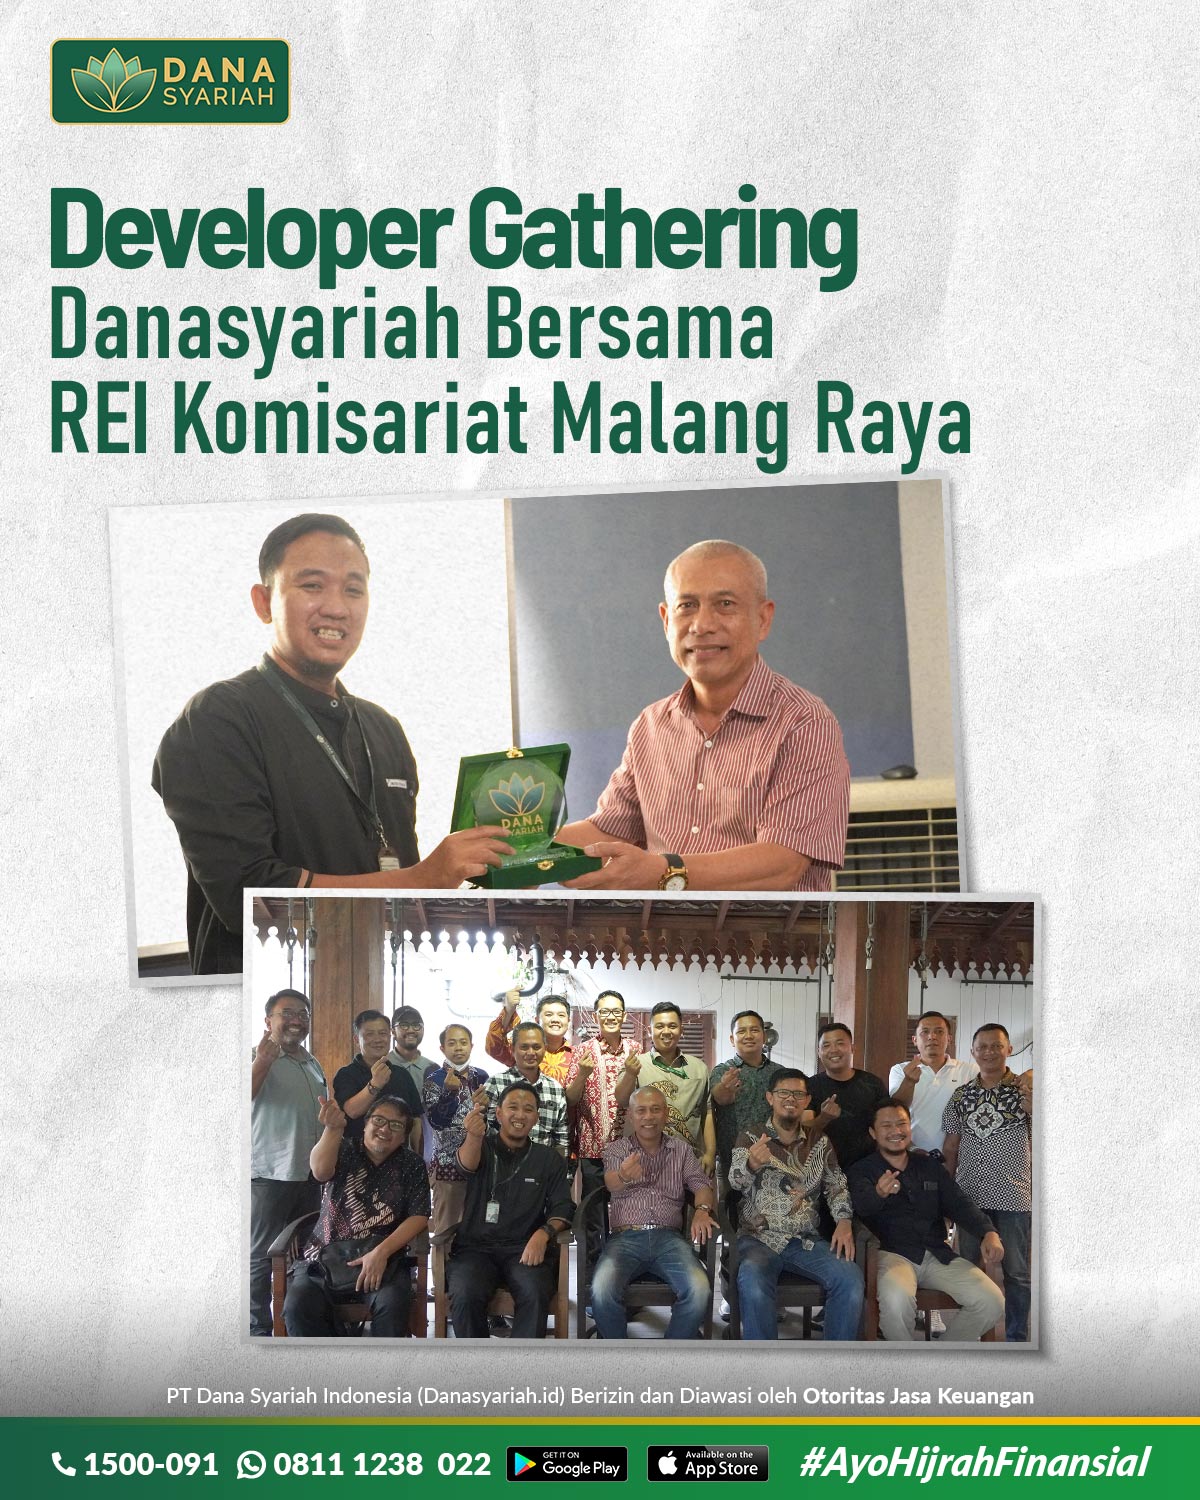 Dana Syariah Developer Gathering Danasyariah bersama REI Komisariat Malang Raya